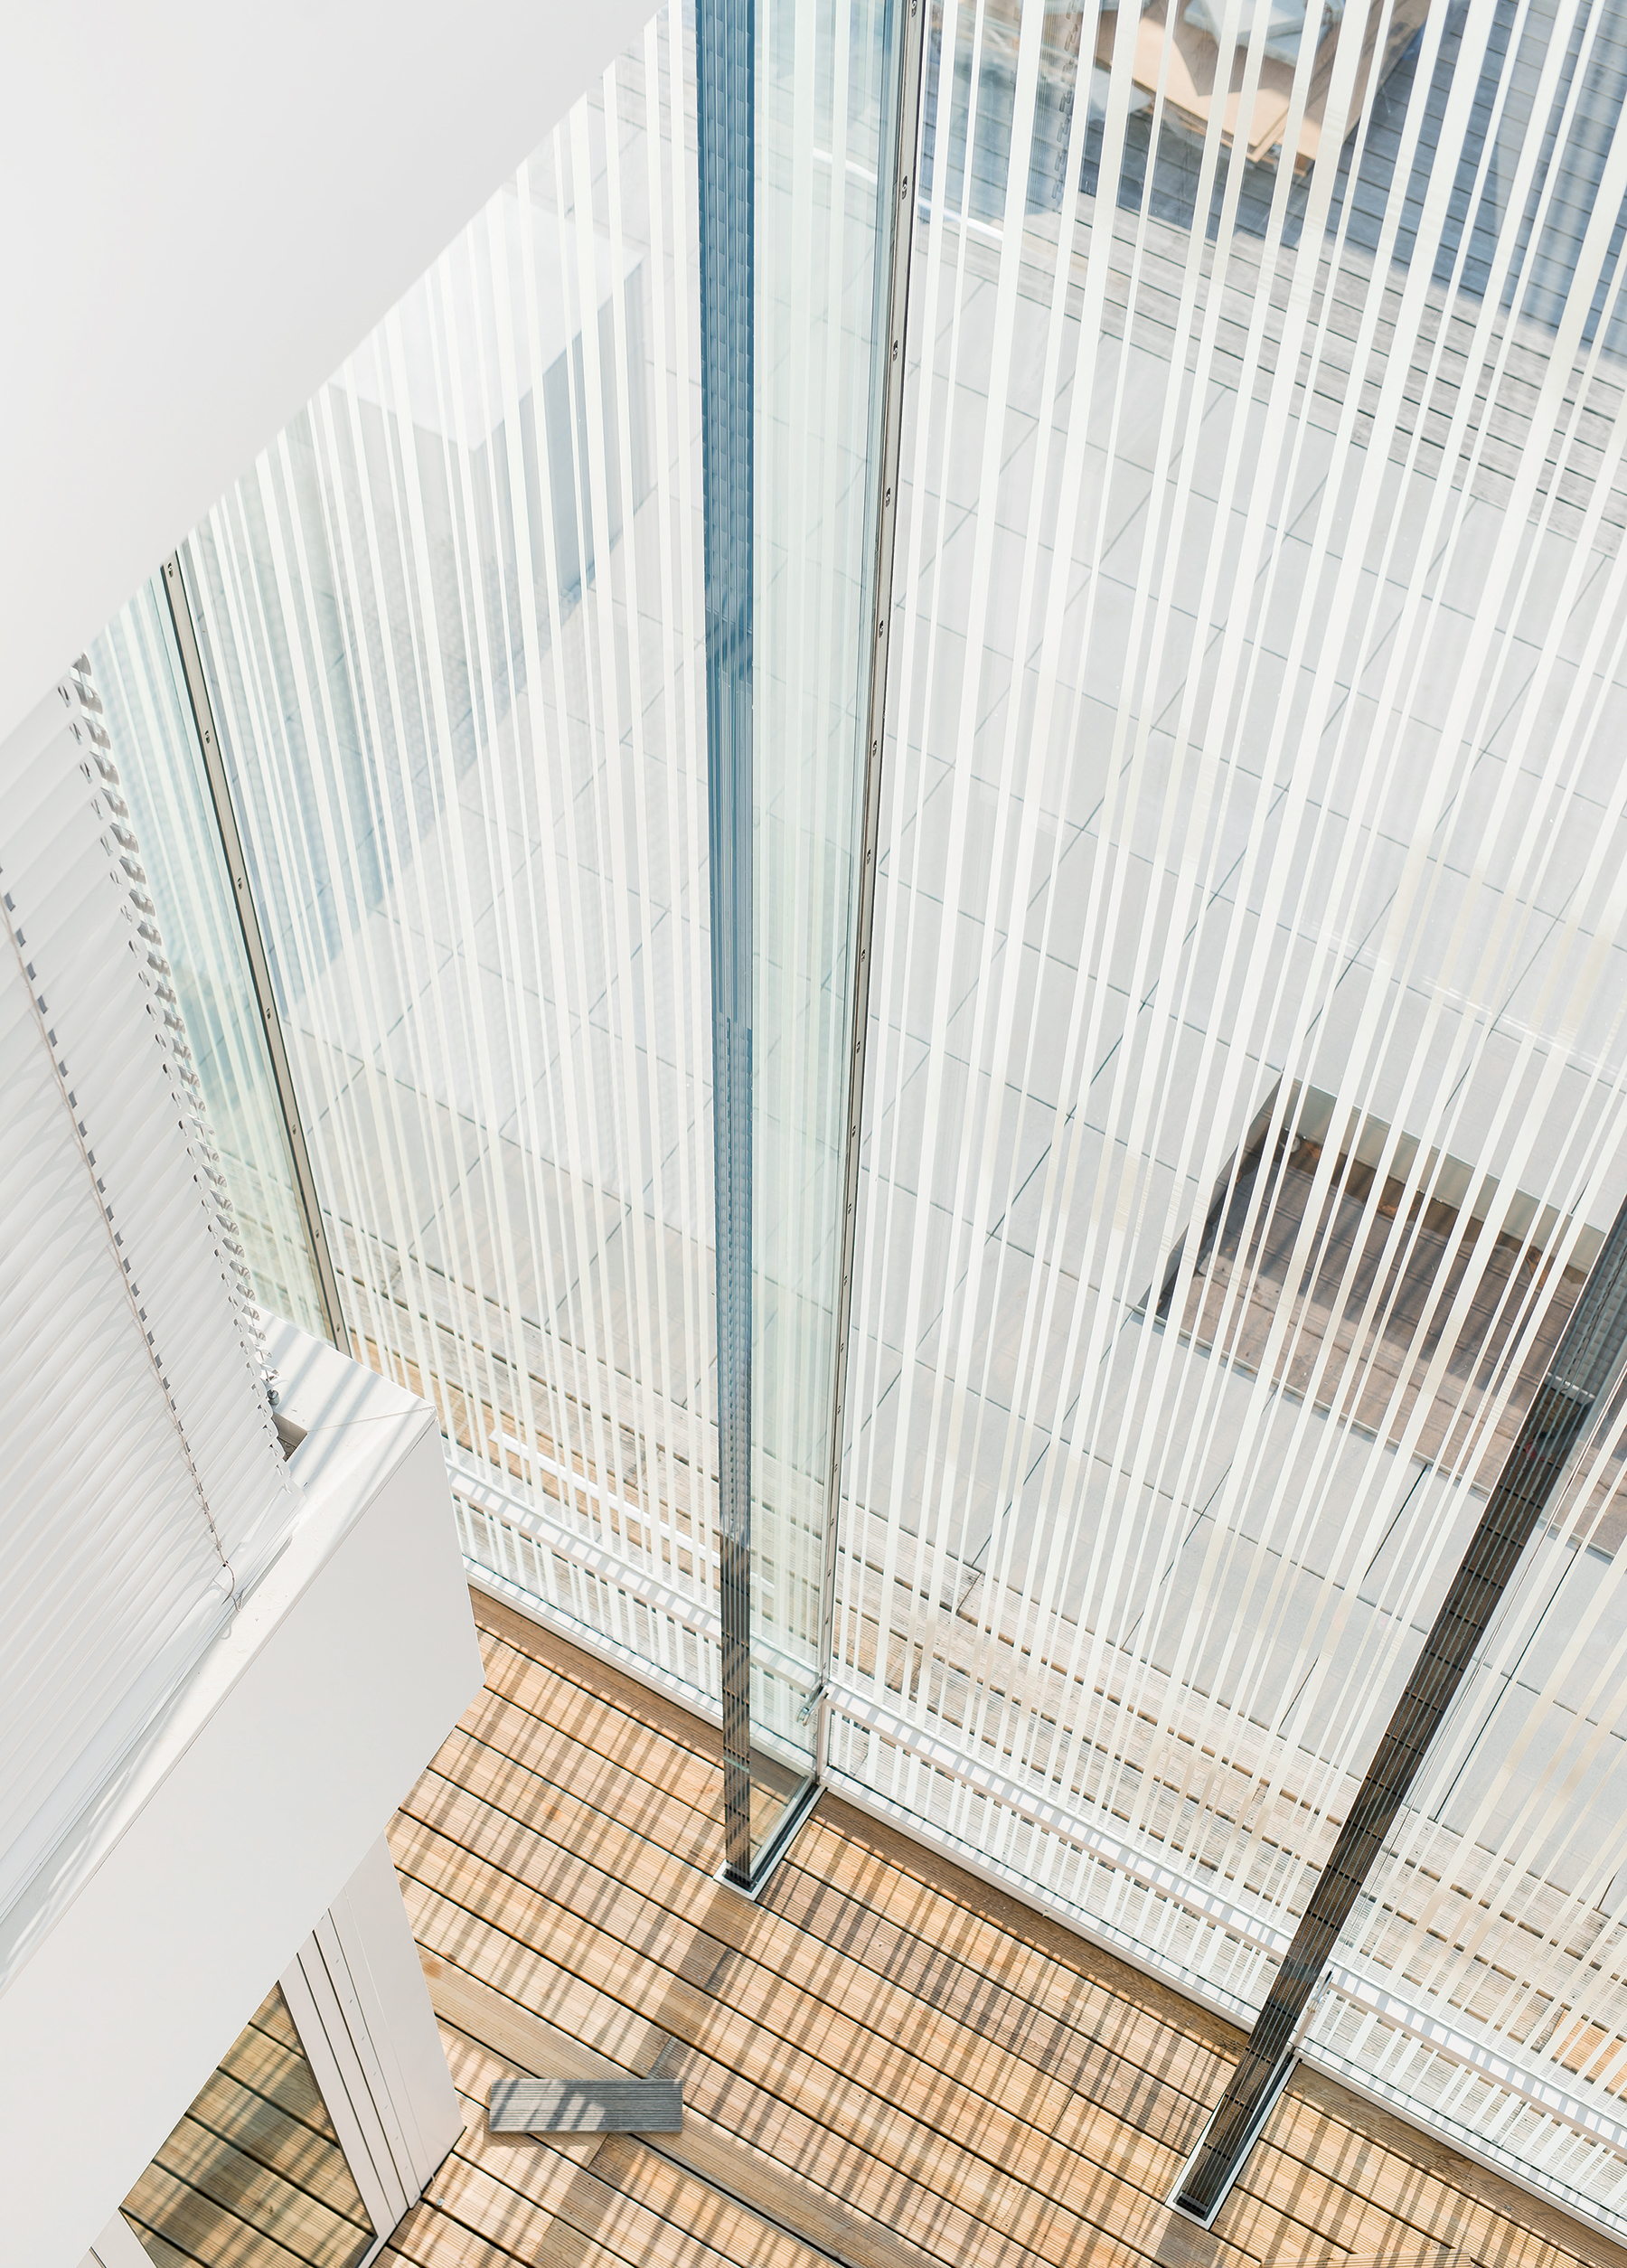 V květnu 2017 otevřel své brány bruselský Dům evropských dějin. Budova, která se datuje do třicátých let minulého století, je bývalou stomatologickou klinikou a byla rozšířena o „skleněný implantát“ s fasádou sestávající ze skleněných tabulí o délce  až 3,8 metru. (Foto: Sedak GmbH  & Co. KG, Christian Fabris)